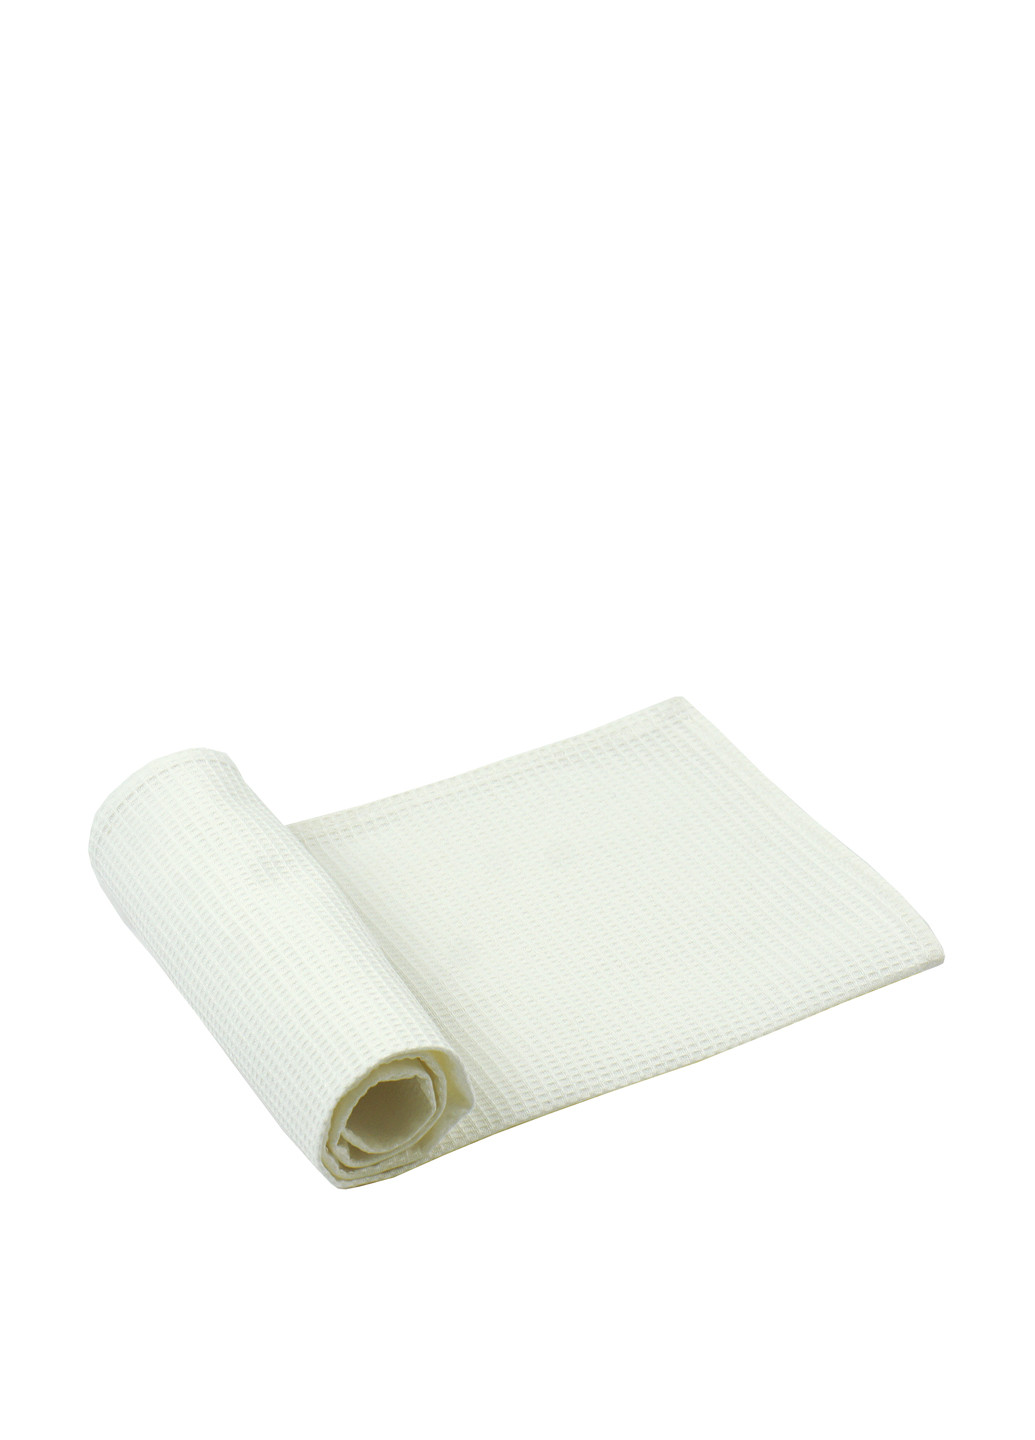 Руно полотенце вафельное 45х90 однотонный белый производство - Украина